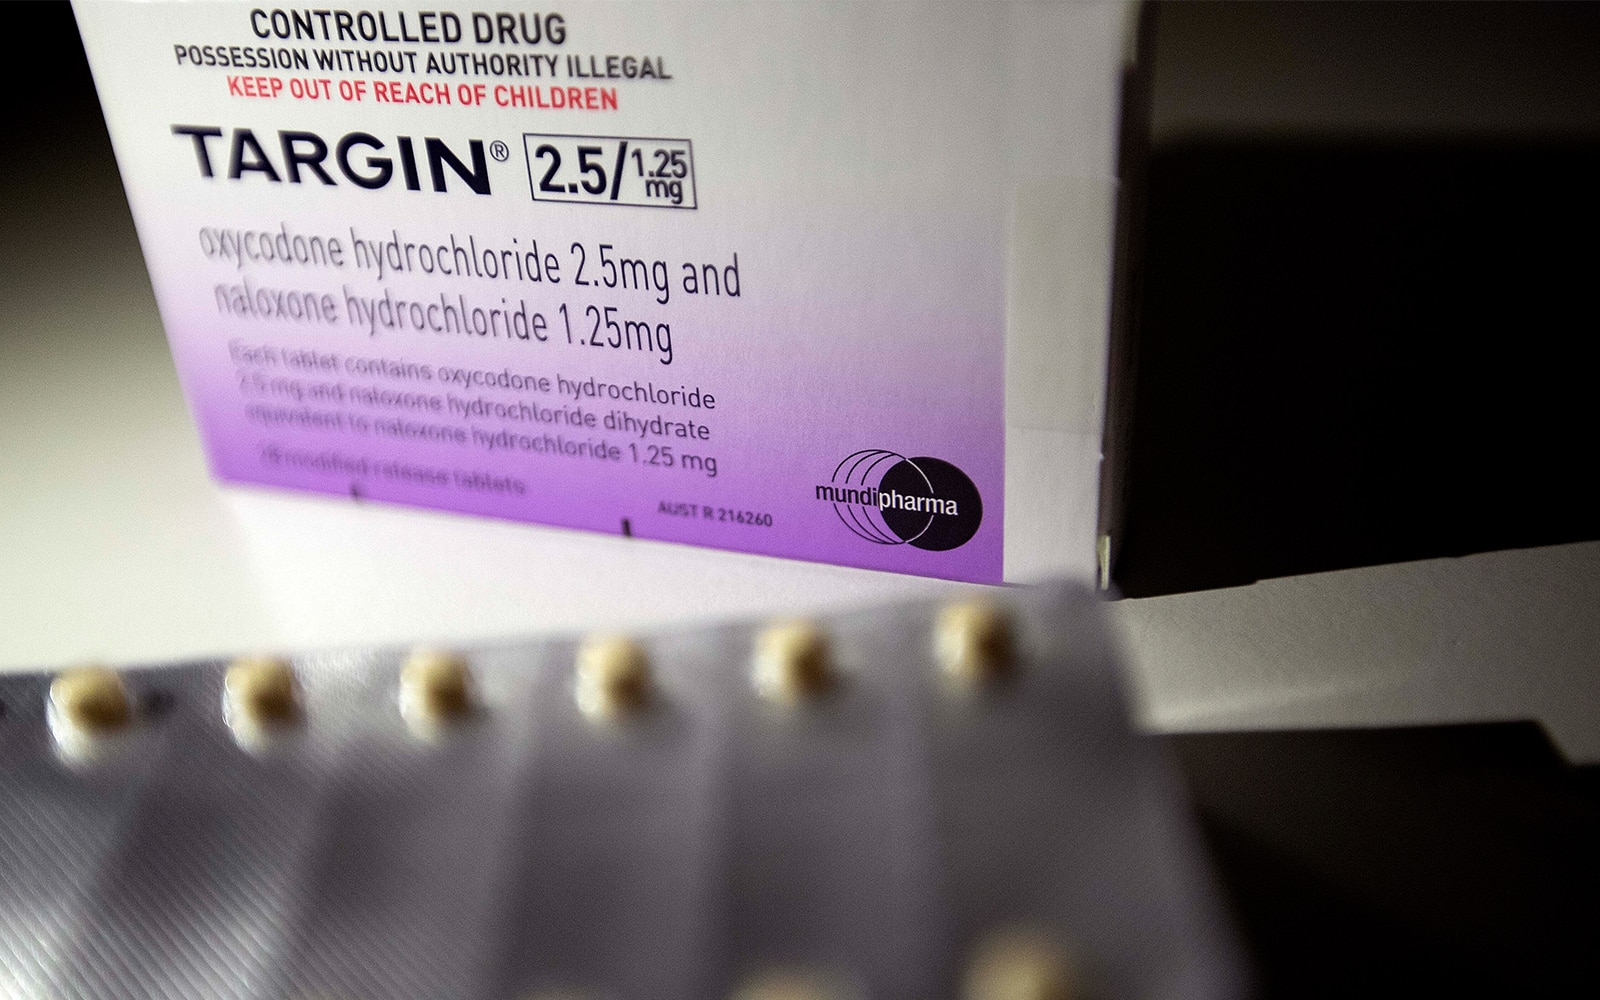 קופסה של התרופה האופיואידית טרגין, המיוצרת על ידי חברת מונדיפארמה (צילום: AP Photo/David Goldman)